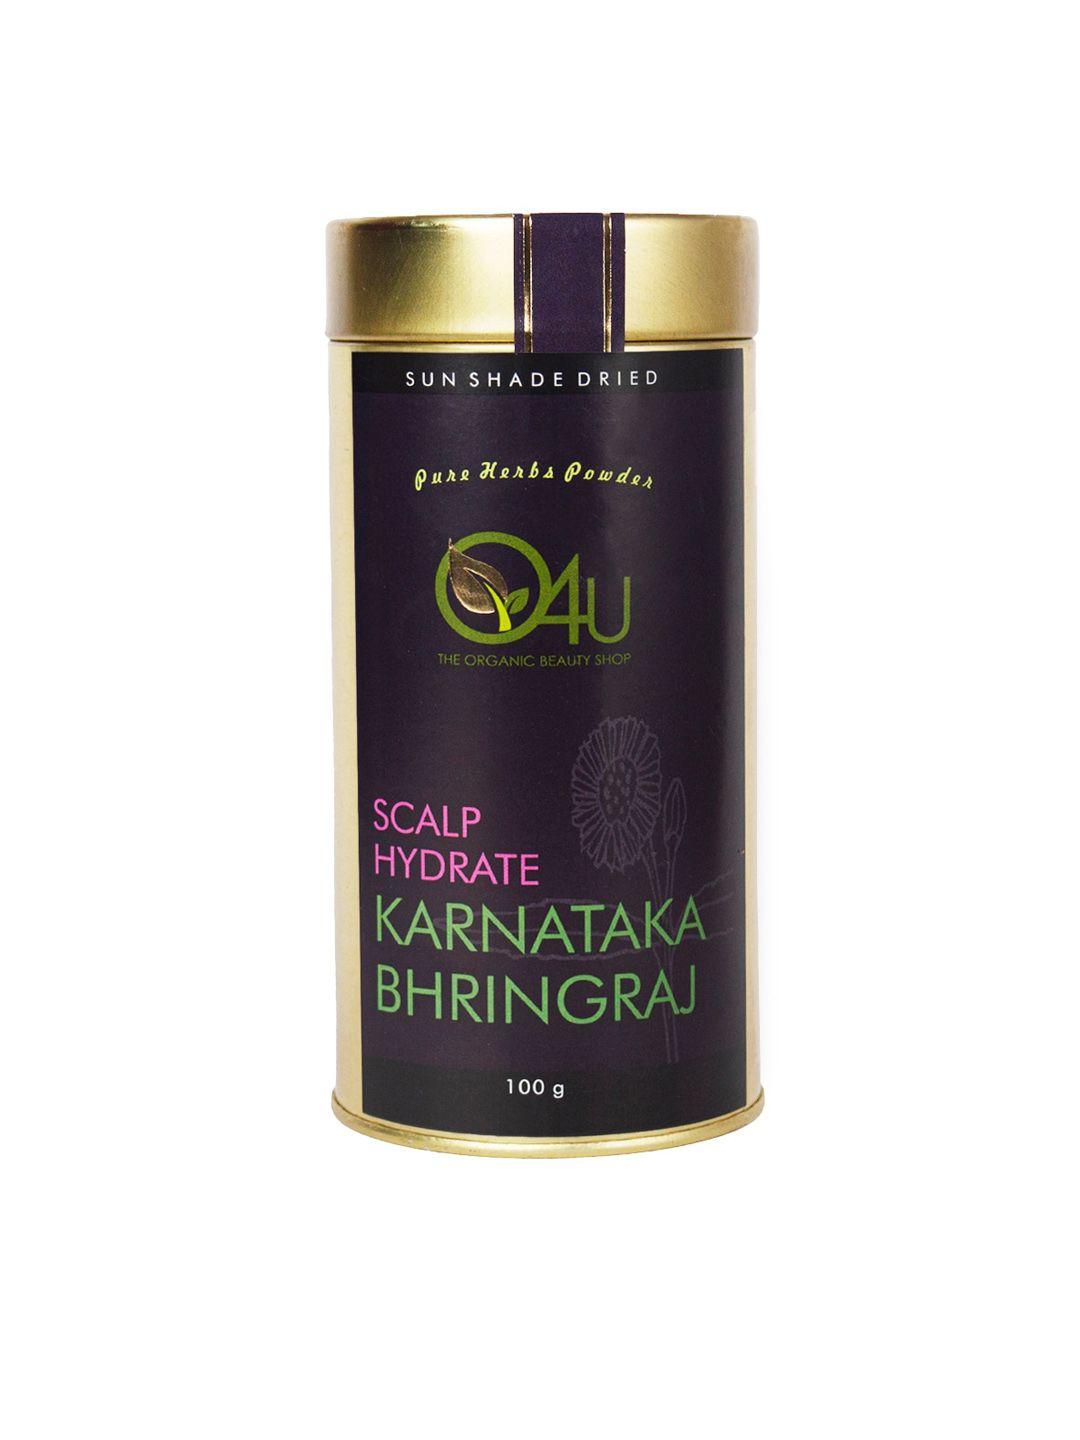 o4u sun shade dried karnataka bhringraj powder for scalp hydration - 100 g